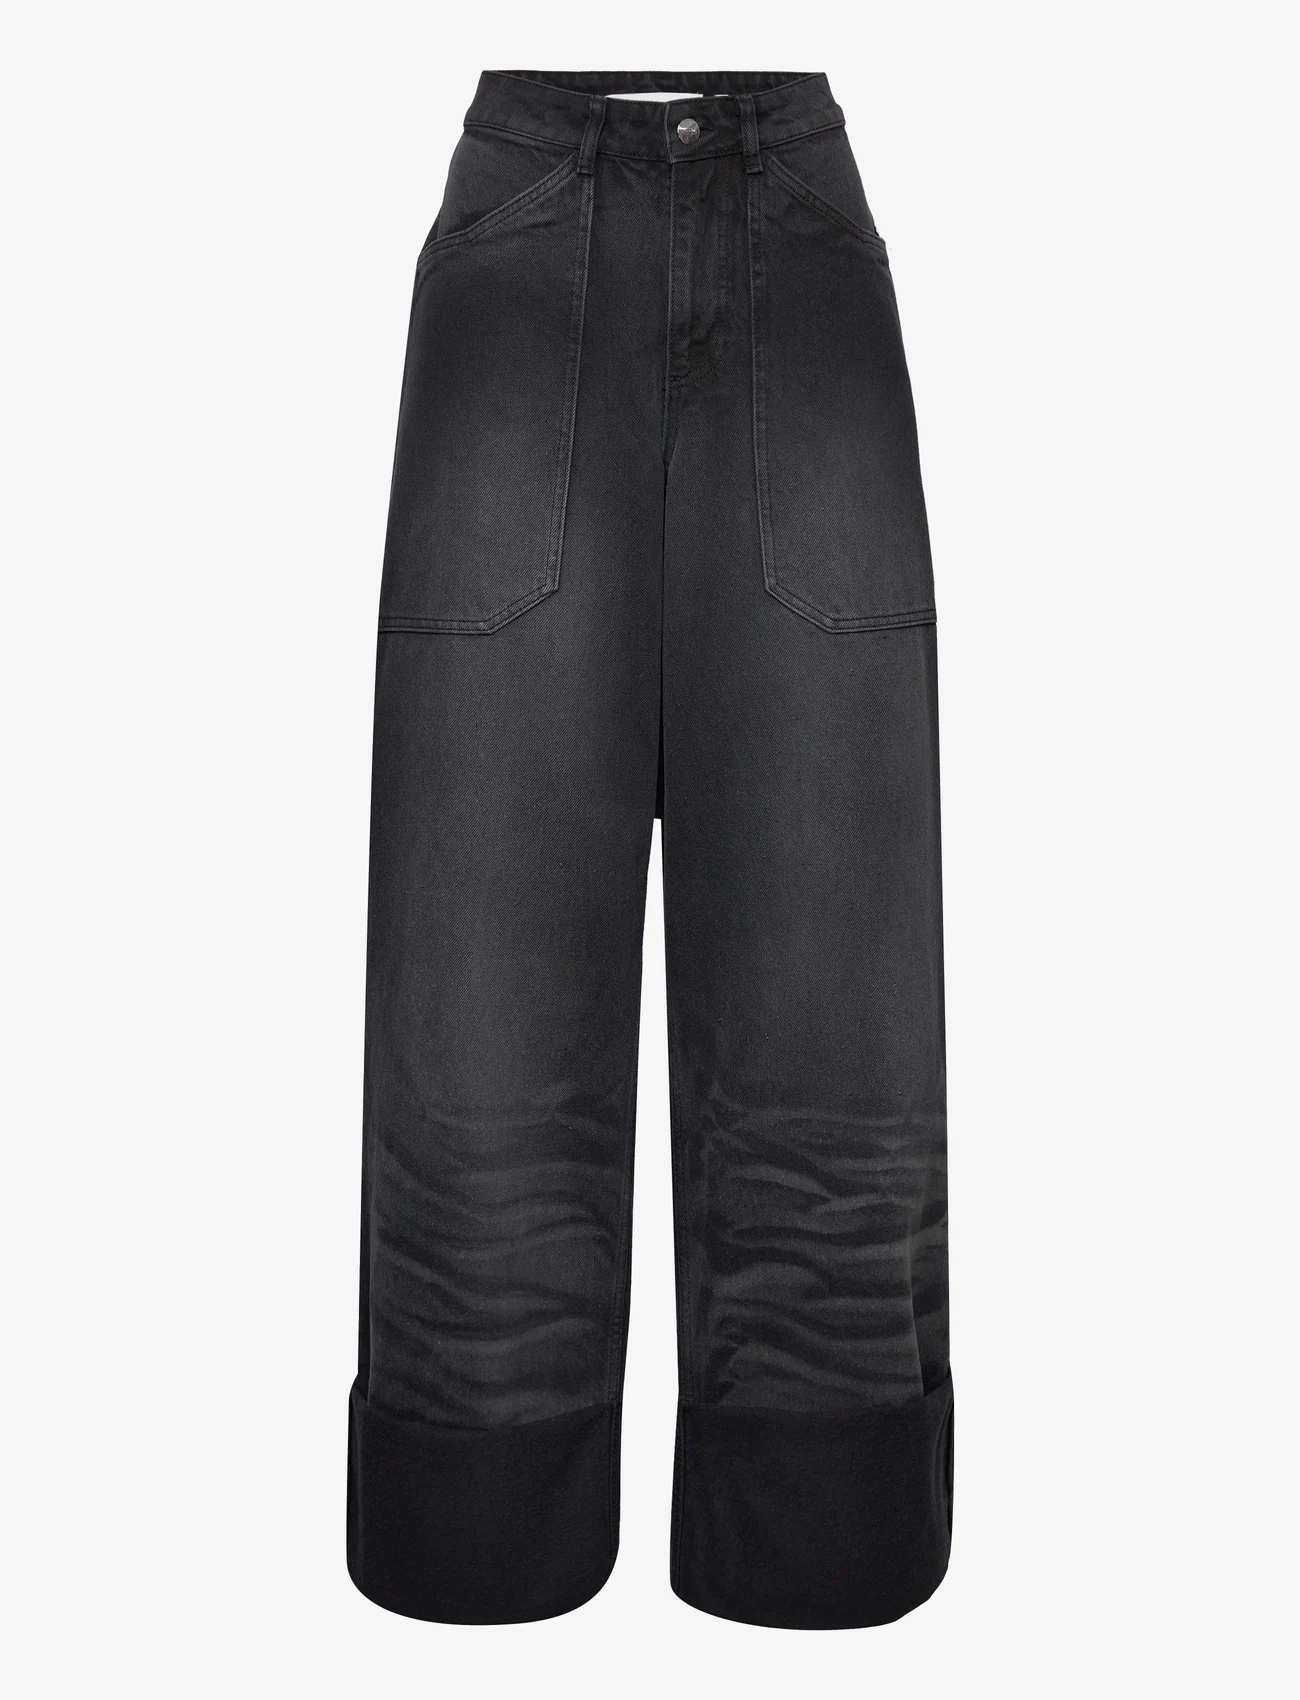 Cannari Concept - Black Wash Loose Jeans - laia säärega teksad - forged iron - 0